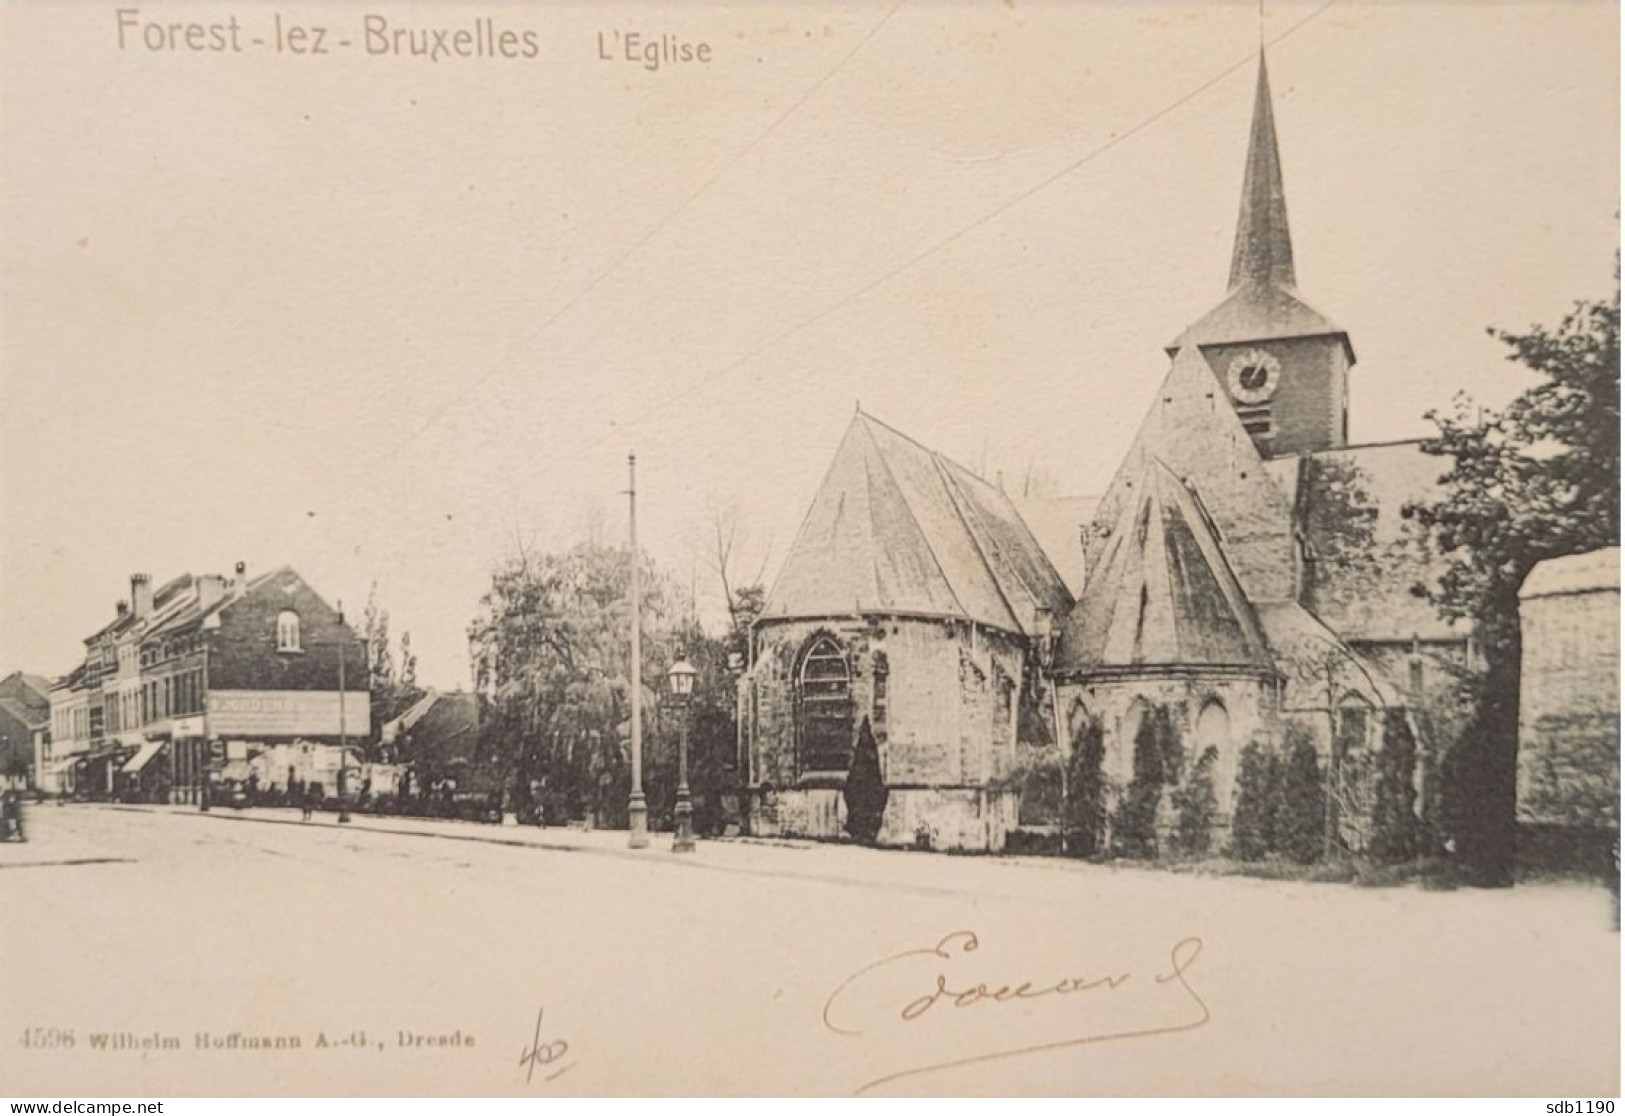 Forest-lez-Bruxelles - L'Eglise (4596 Wilhelm Hoffmann A.-G., Dresde), Circulée 190? - Vorst - Forest